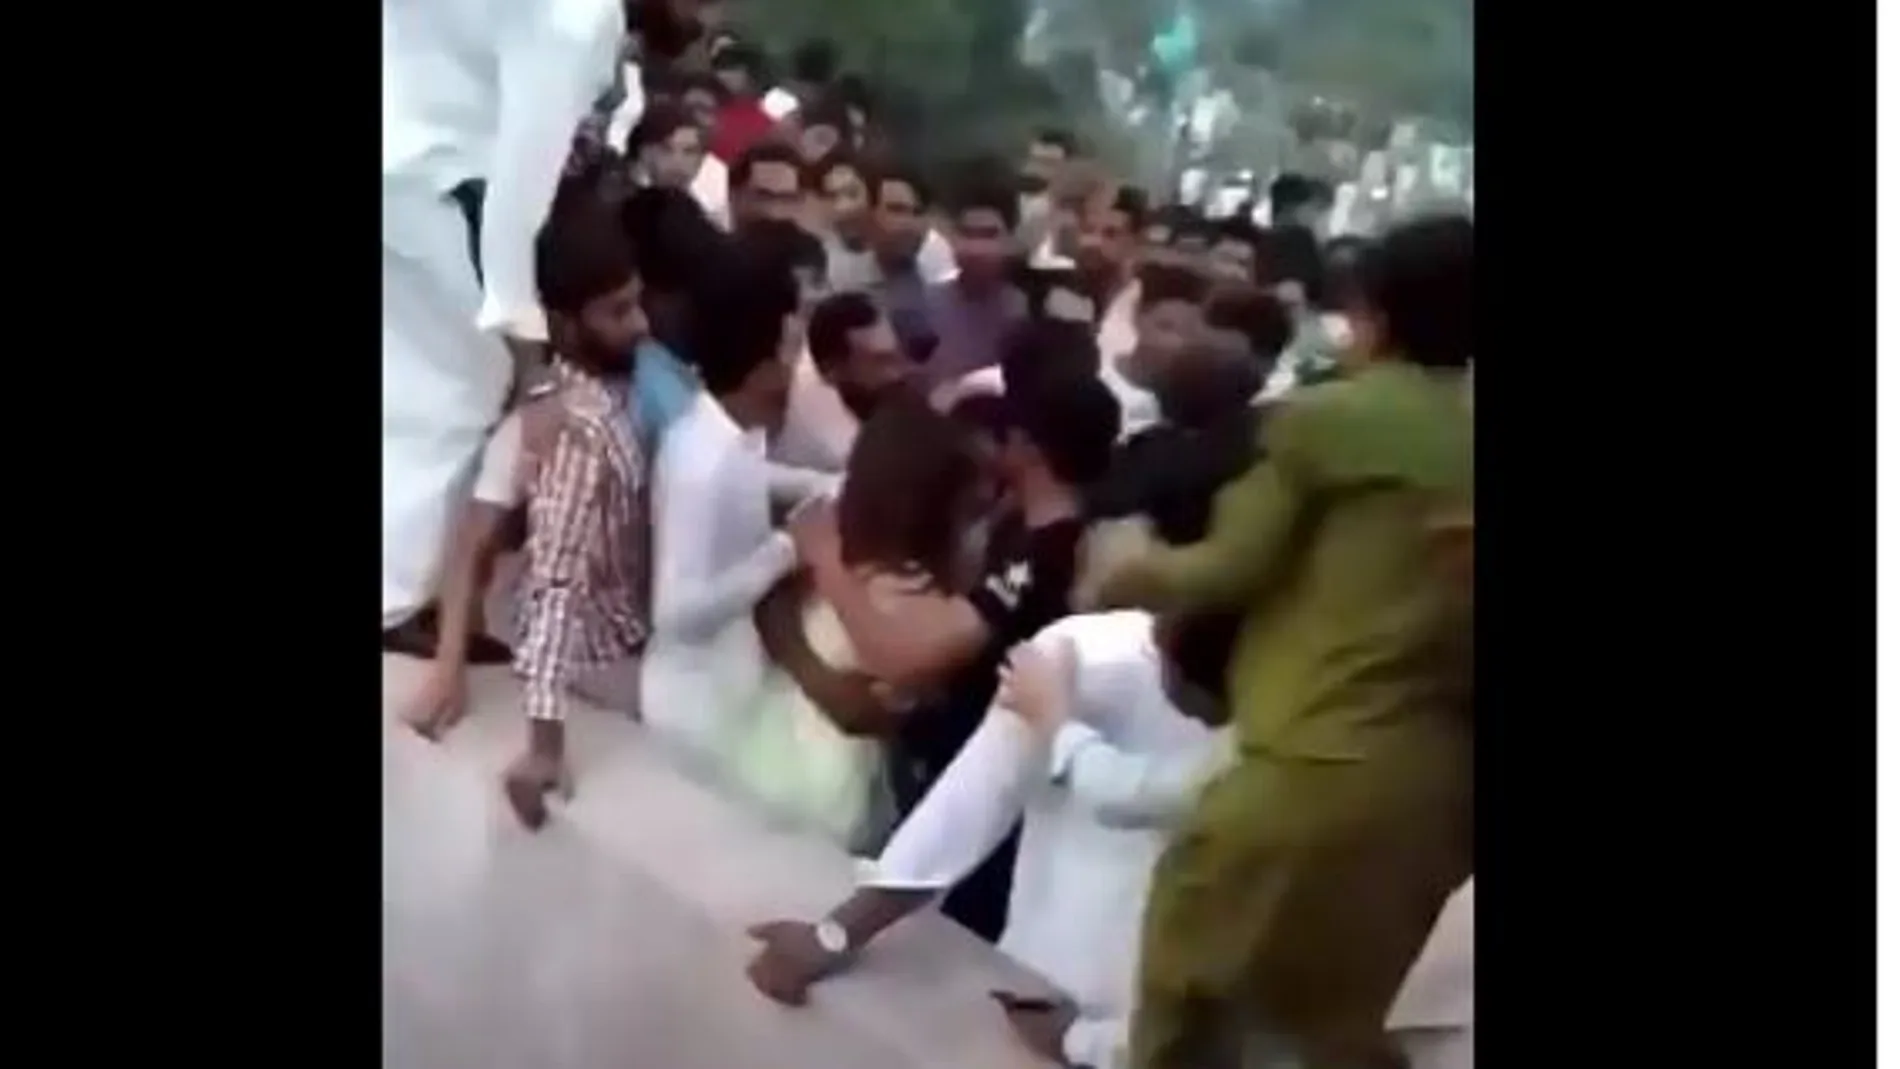 Una turba de 400 hombres agrede, desnuda y lanza al aire a una mujer en Pakistán